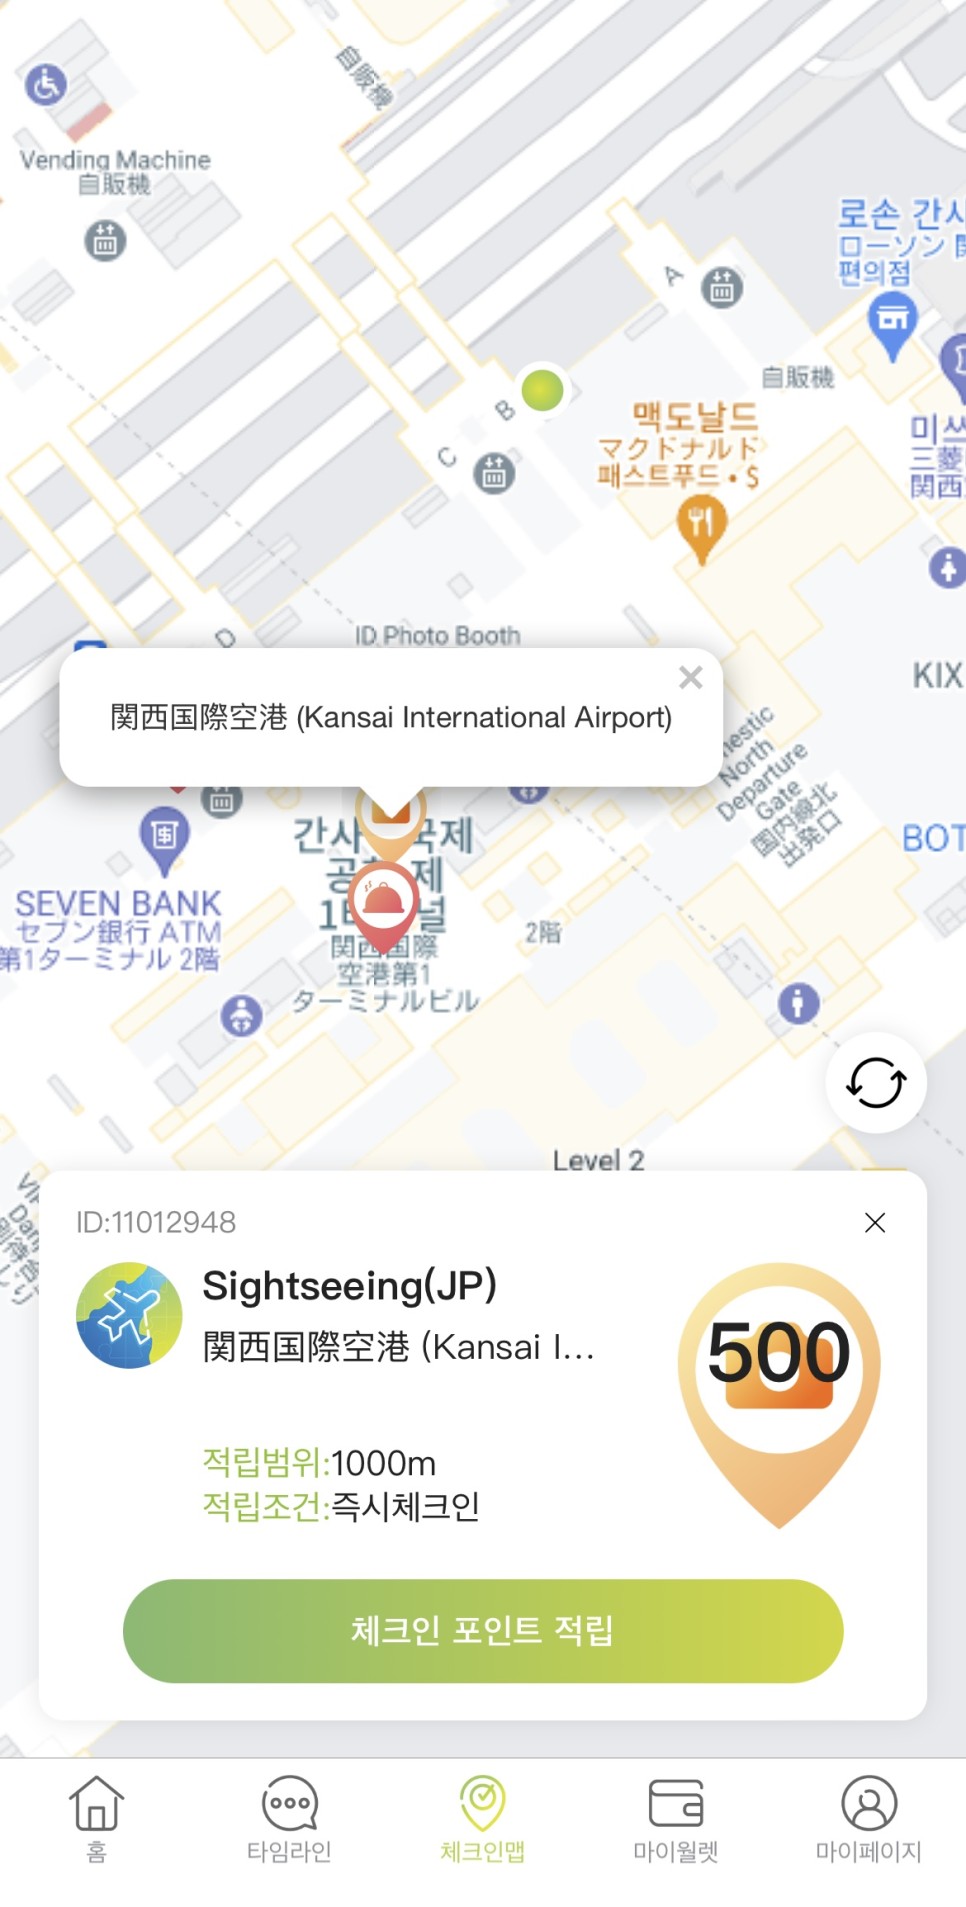 오사카 자유여행 팁! 하루카스300 전망대 무료이용 방법 / 일본여행추천!